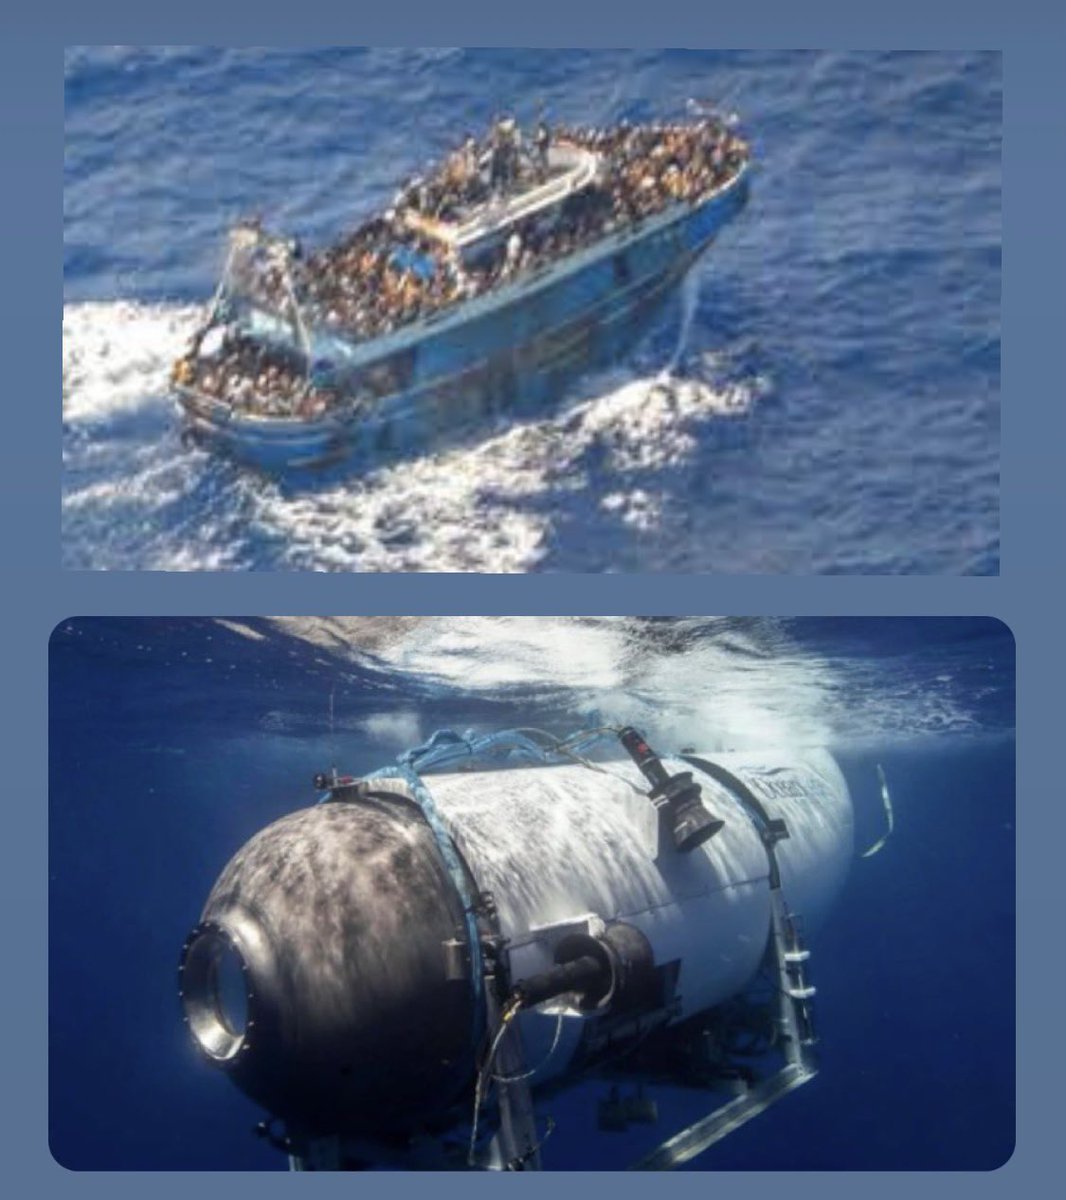 Yüzlerce araç gereç teknoloji, yardım kuruluşu okyanusta denizaltıyla kaybolan 5 zengini arıyor.Aynı hafta Yunanistan’da 750 kişilik mülteci botu battı 100’e yakın insan hayatta kalabildi. Dünyadan kimseden ses çıkmadı.Avrupa kılını bile kıpırdatmıyor, sorumluluk hissetmiyor.